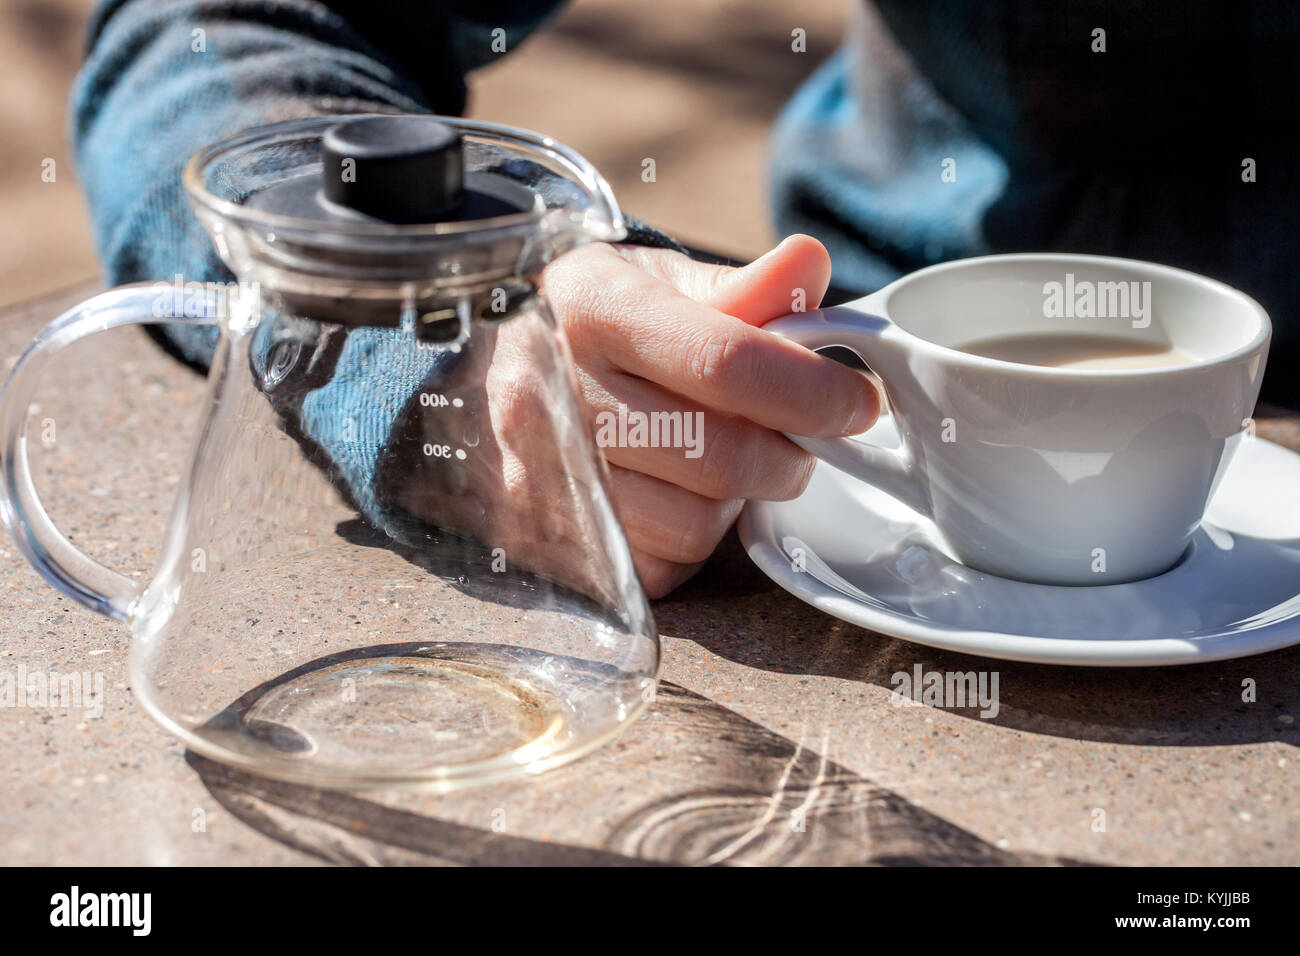 Kaukasische Frau Hand hält Keramik Tasse mit schwarzem Tee und Milch, leeres Glas Teekanne neben Stockfoto